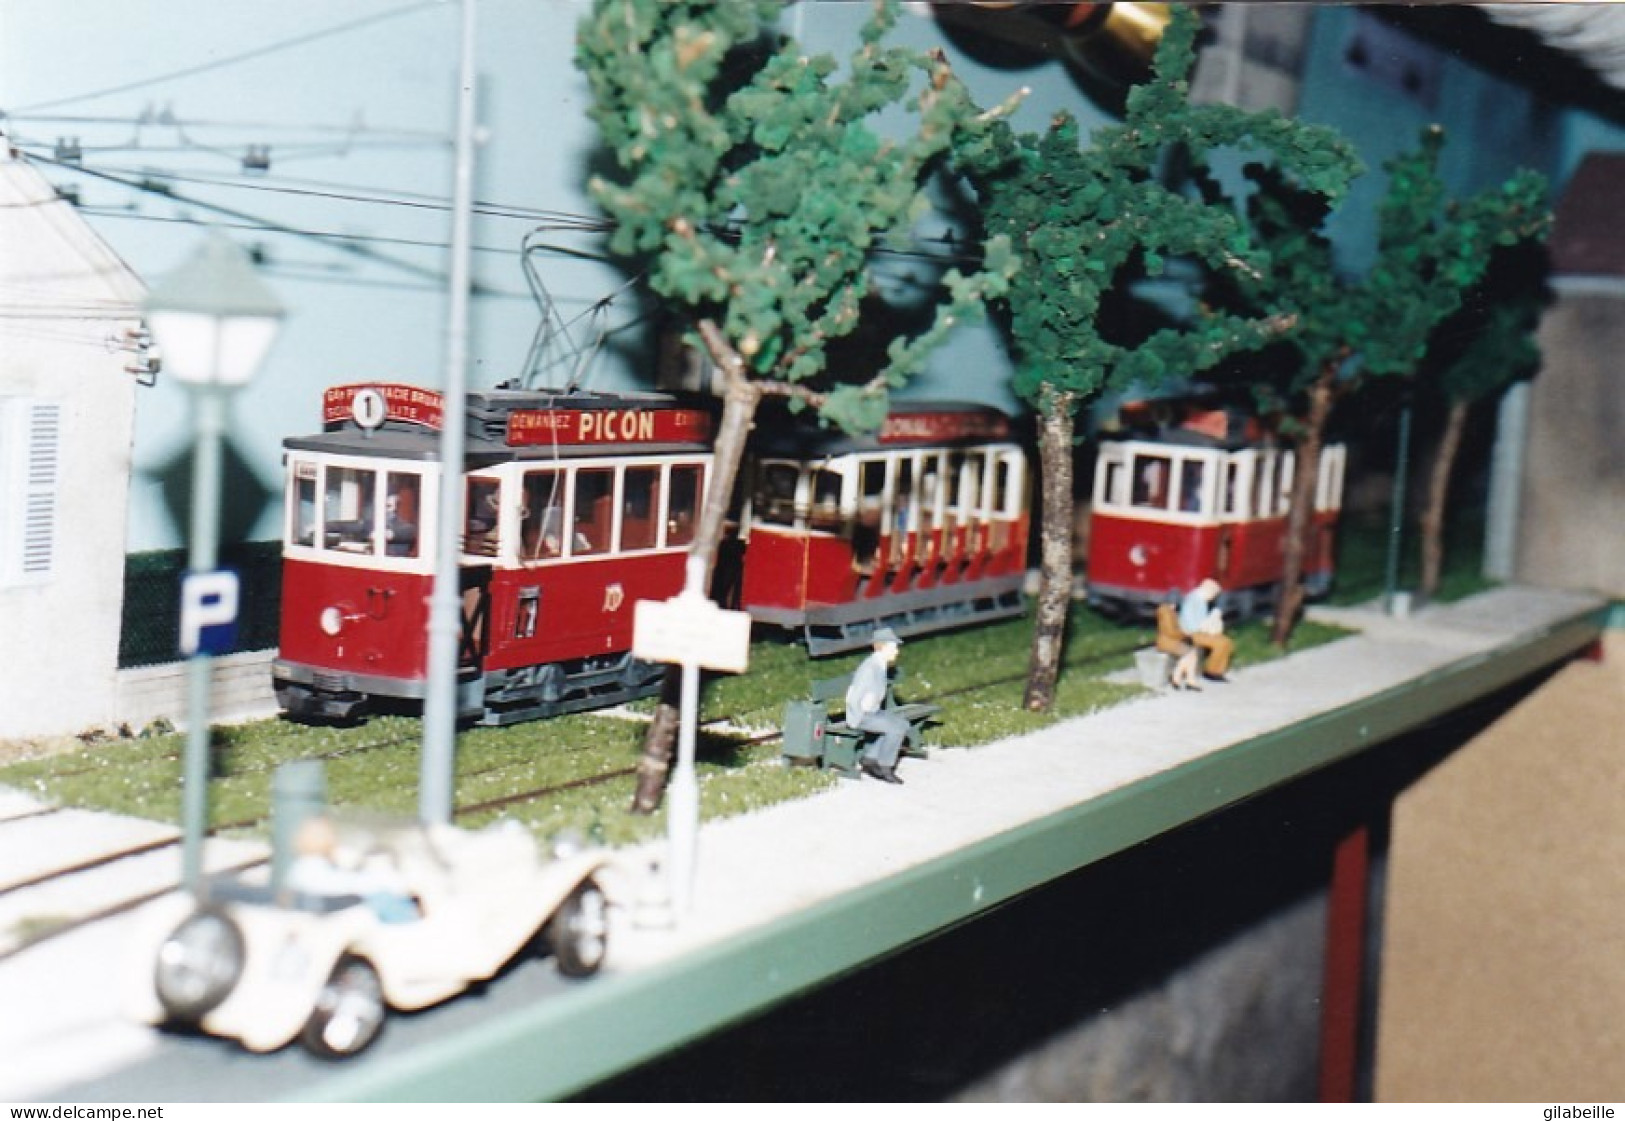 Photo Originale - 21- DIJON - Maquette De Tramway - Modele Reduit - Allée Du Parc - Reseau Des T.E.D -  - Trains